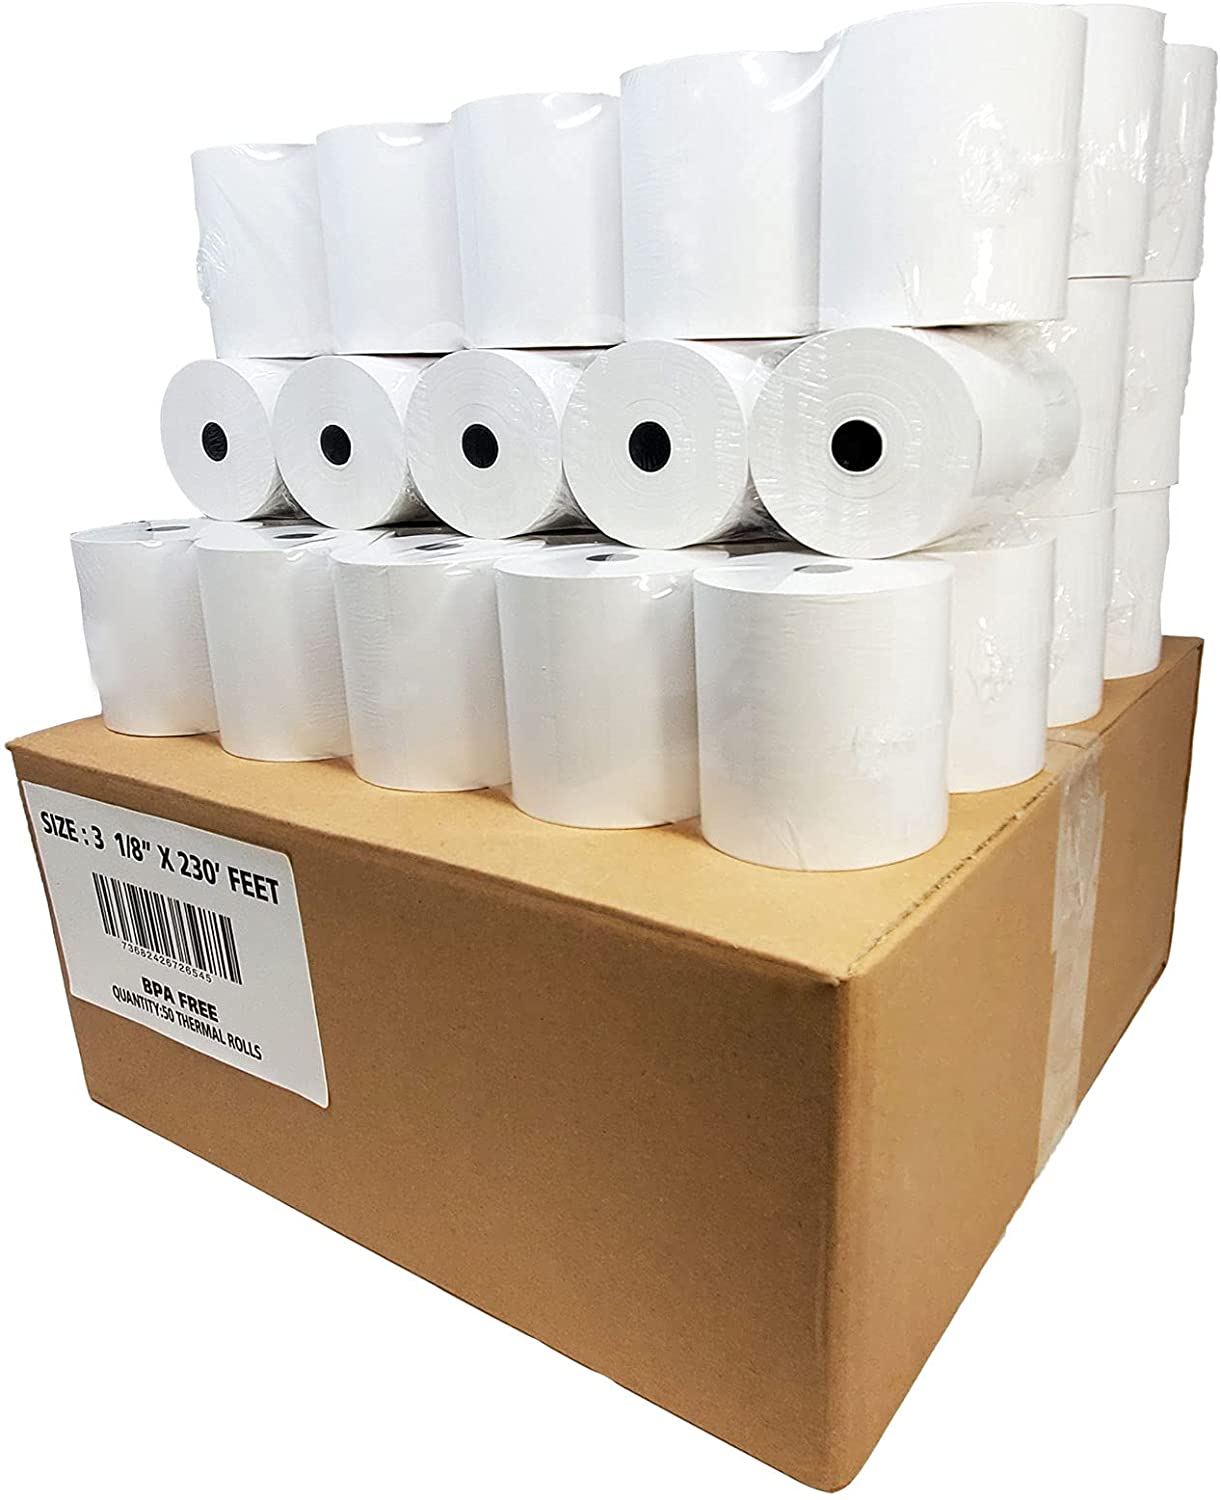 3 1/8 x 230 thermal paper roll 50 pack Premium BPA FREE - 15% More Paper -  BuyRegisterRolls® PRTN: 318230